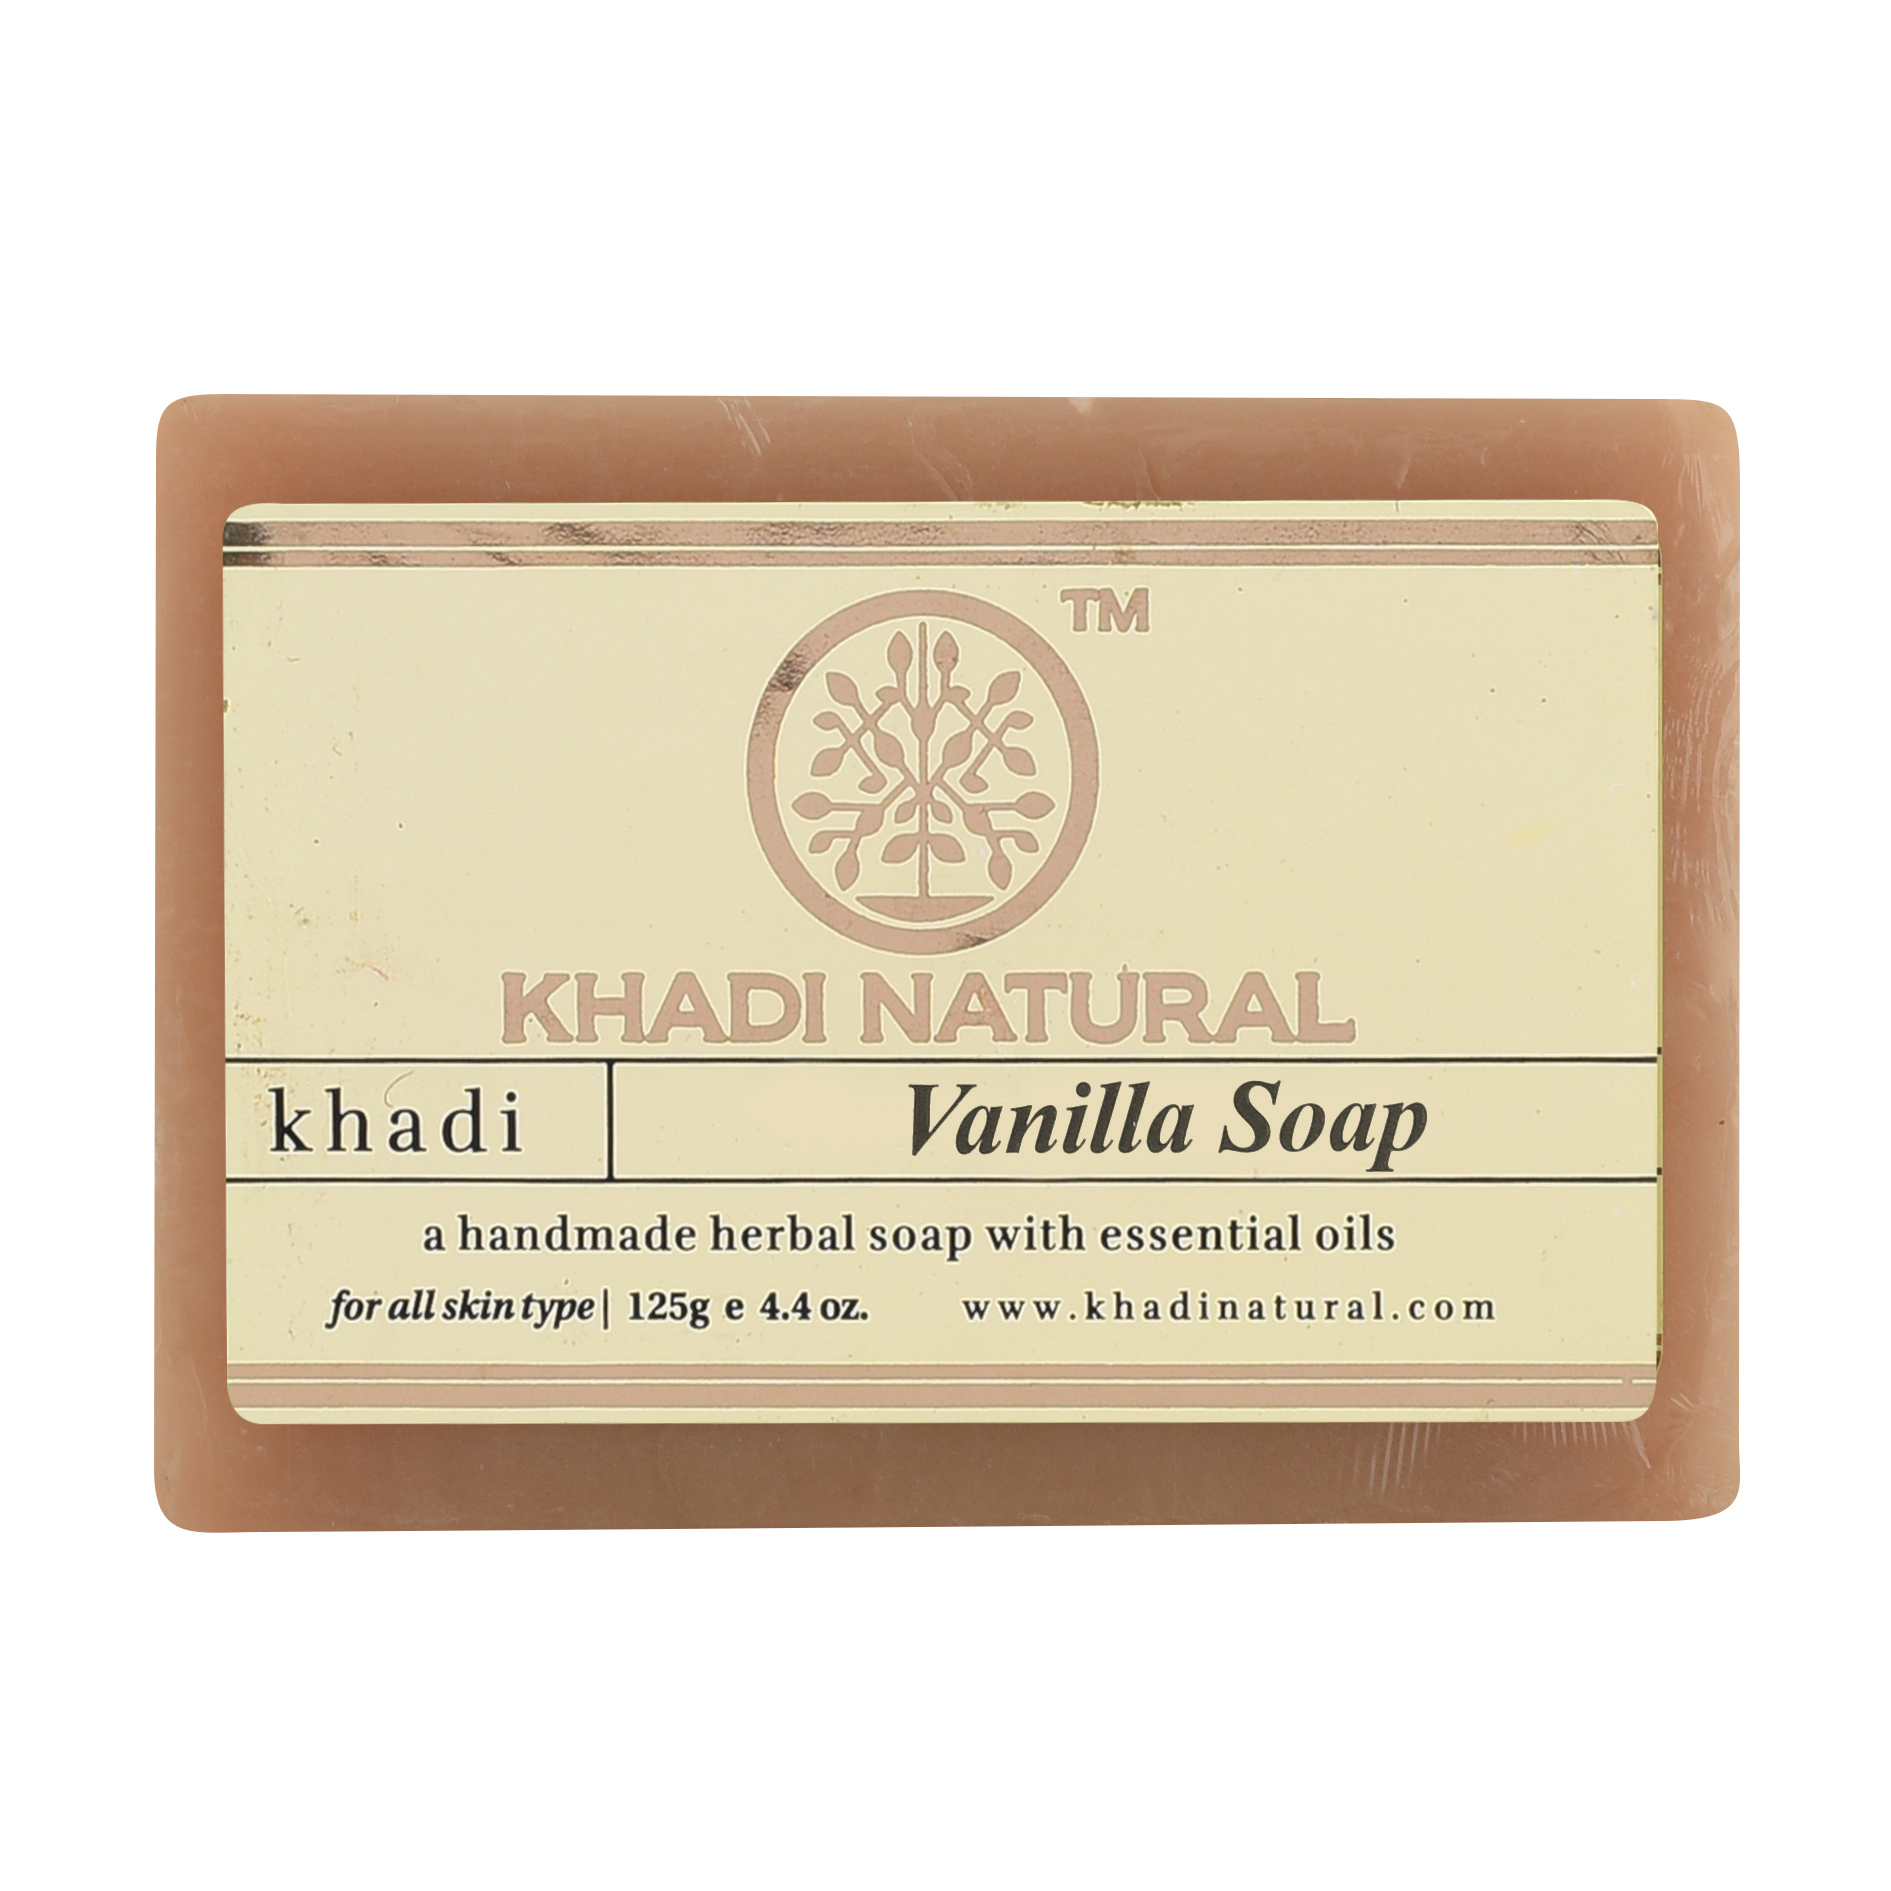 VANILLA Handmade Herbal Soap With Essential Oils, Khadi Natural (ВАНИЛЬ Мыло ручной работы с эфирными маслами, Кхади), 125 г.